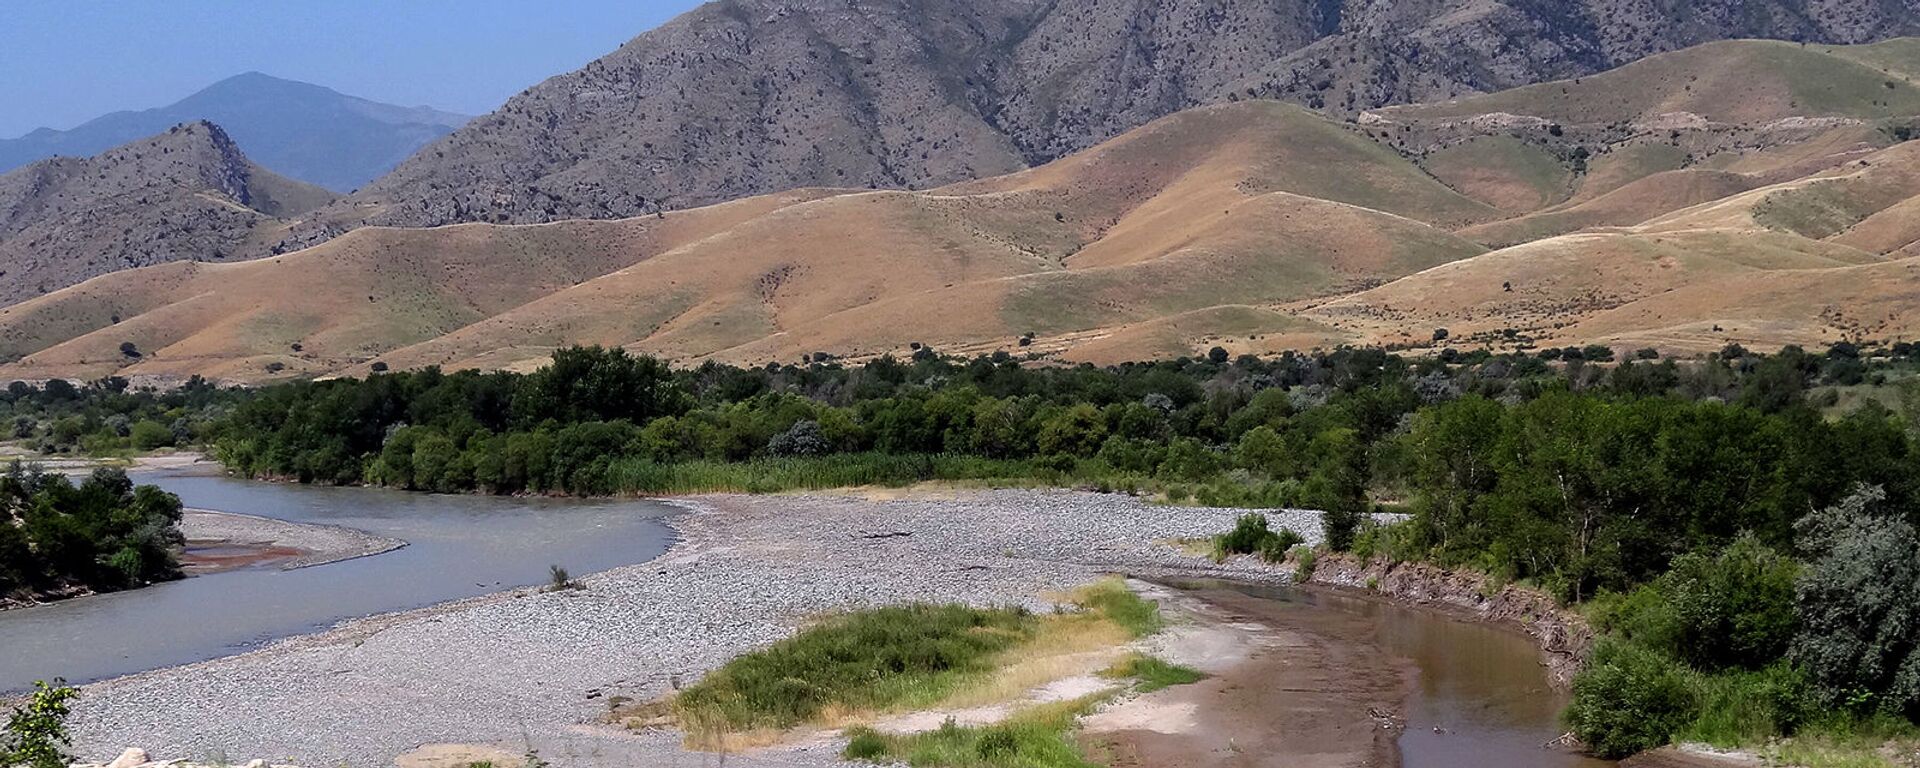 Արաքս գետը Արցախի, Իրանի ու Ադրբեջանի սահմանին - Sputnik Արմենիա, 1920, 10.09.2021